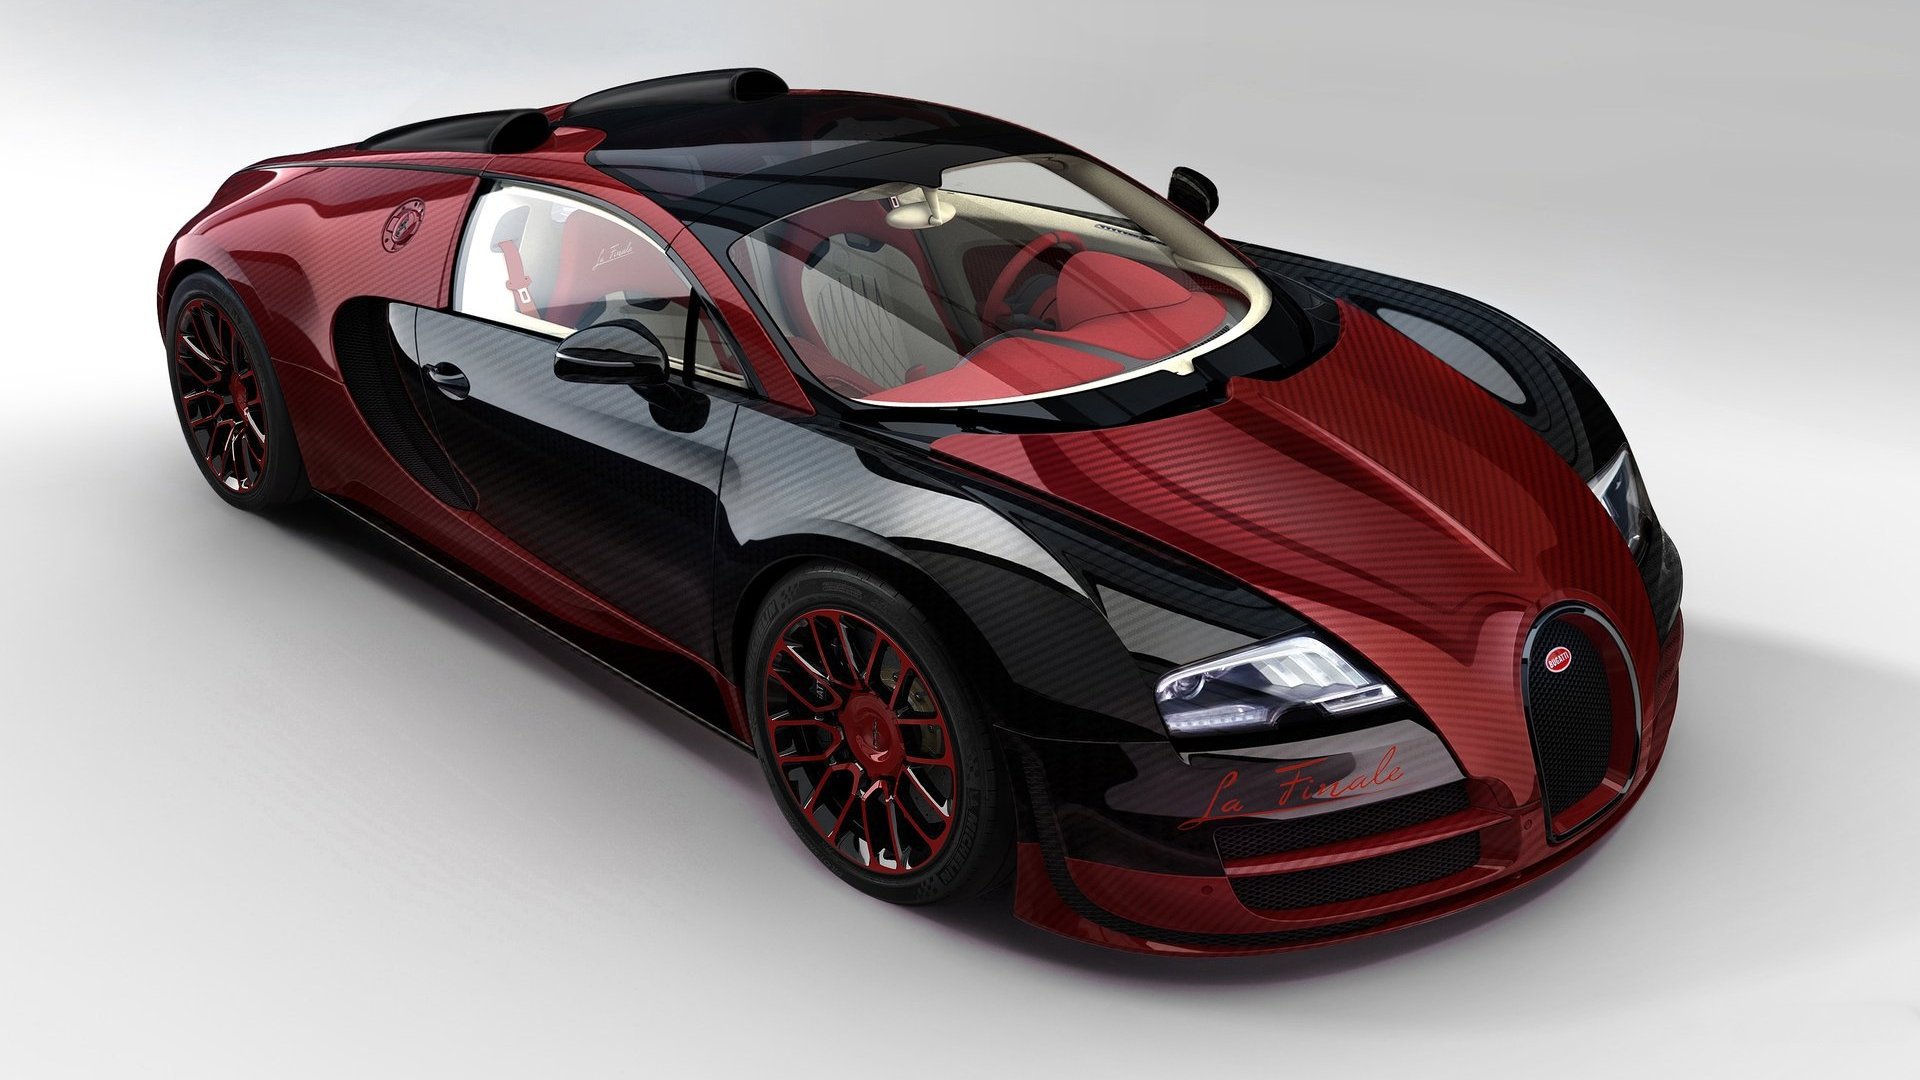 Bugatti Veyron Wallpaper High Resolution Yi825h8